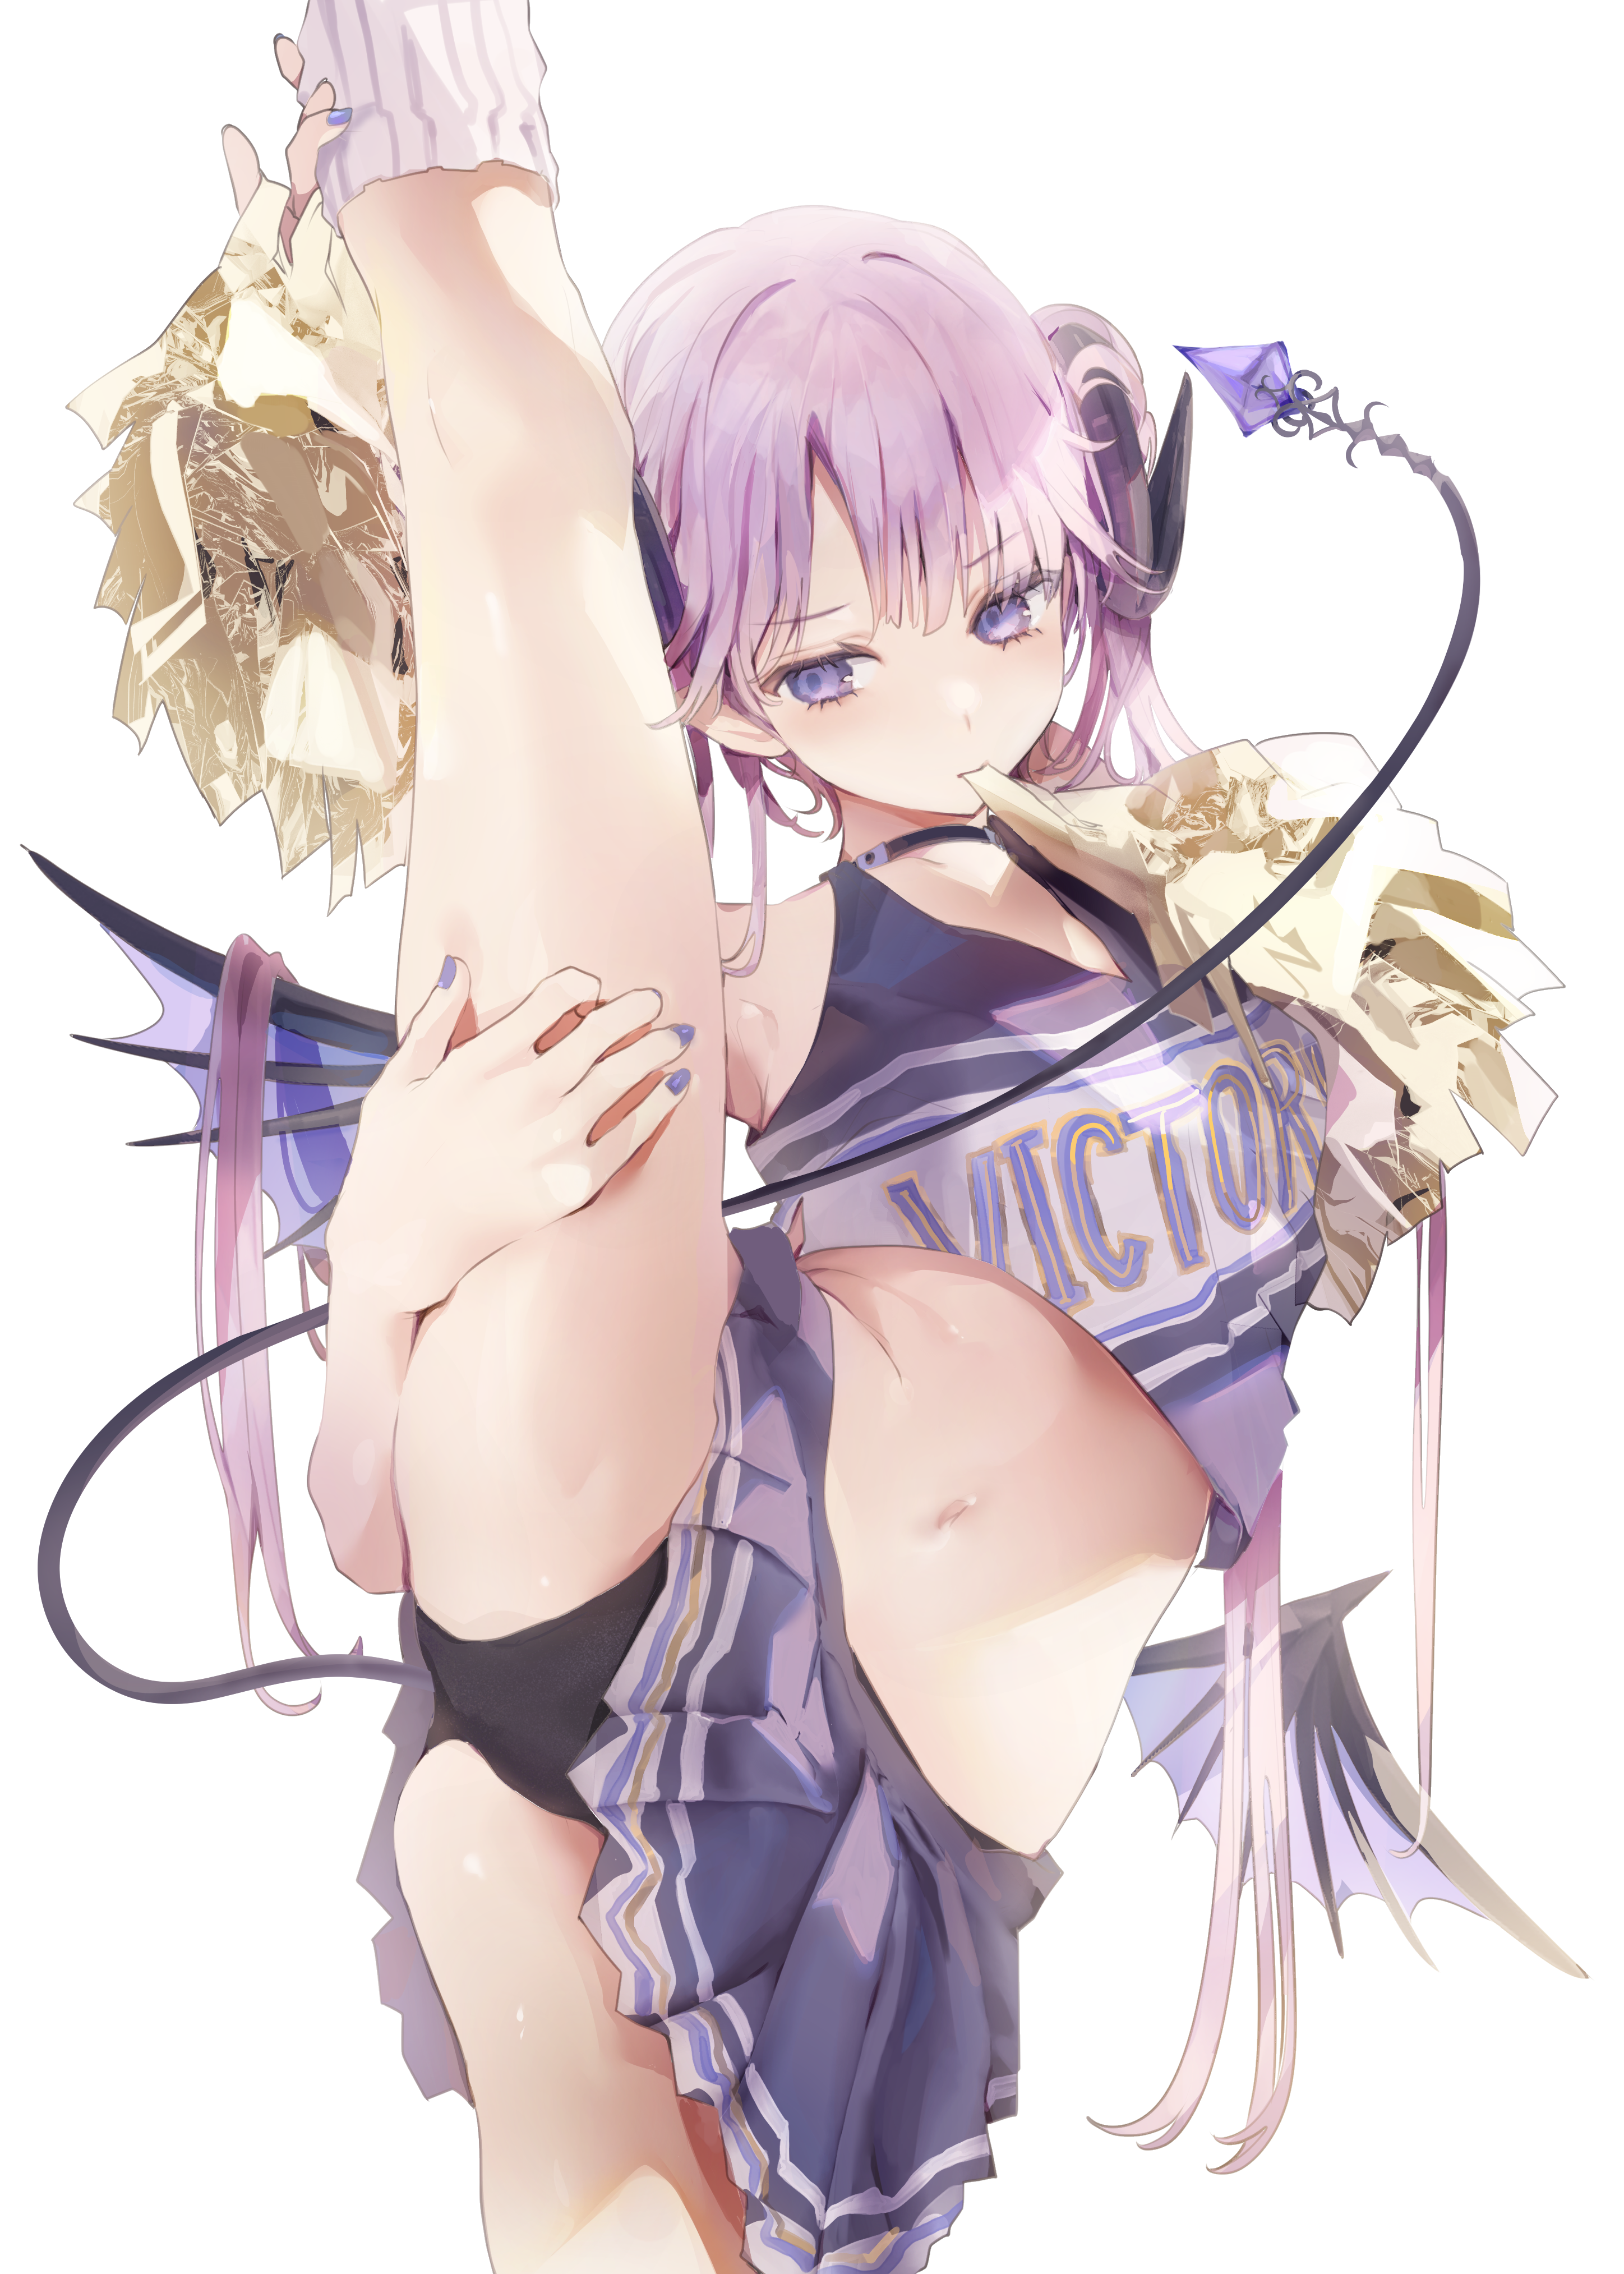 Anime 2896x4054 purple hair legs up panties black panties anime girls spread legs cheerleaders belly demon girls demon tail horns JIMA